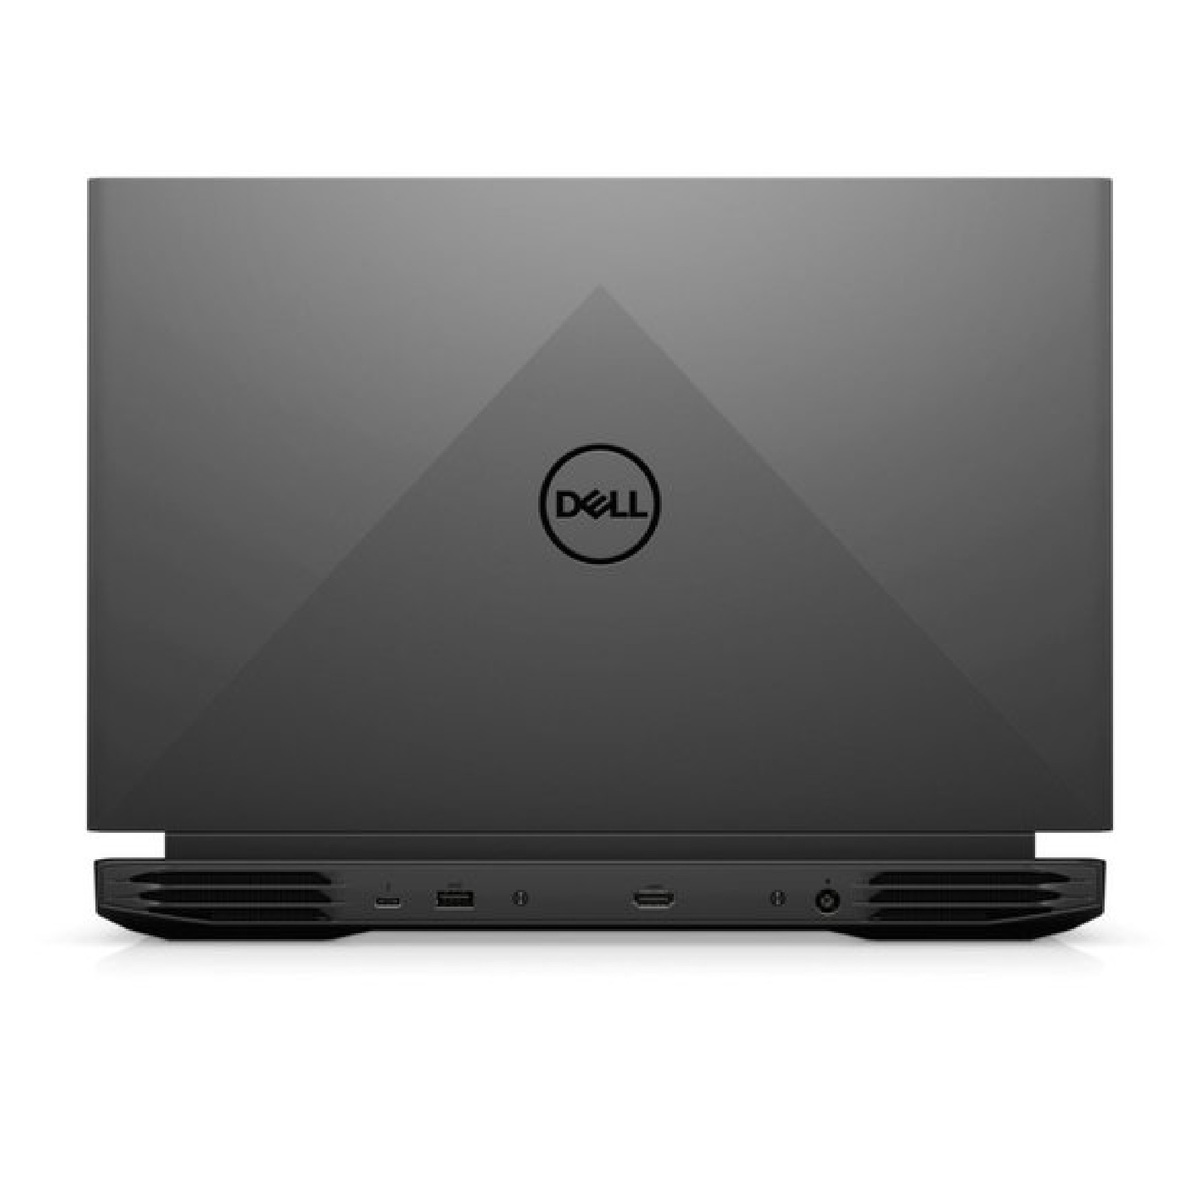 Dell G15 5510 Gaming Laptop (G15-5510-6000-GRY),Intel Core i5-10500H,8GB RAM,256 GB SSD,15.6"FHD,NVIDIA(R) GeForce(R) GTX 1650 4GB,Windows 11,Grey